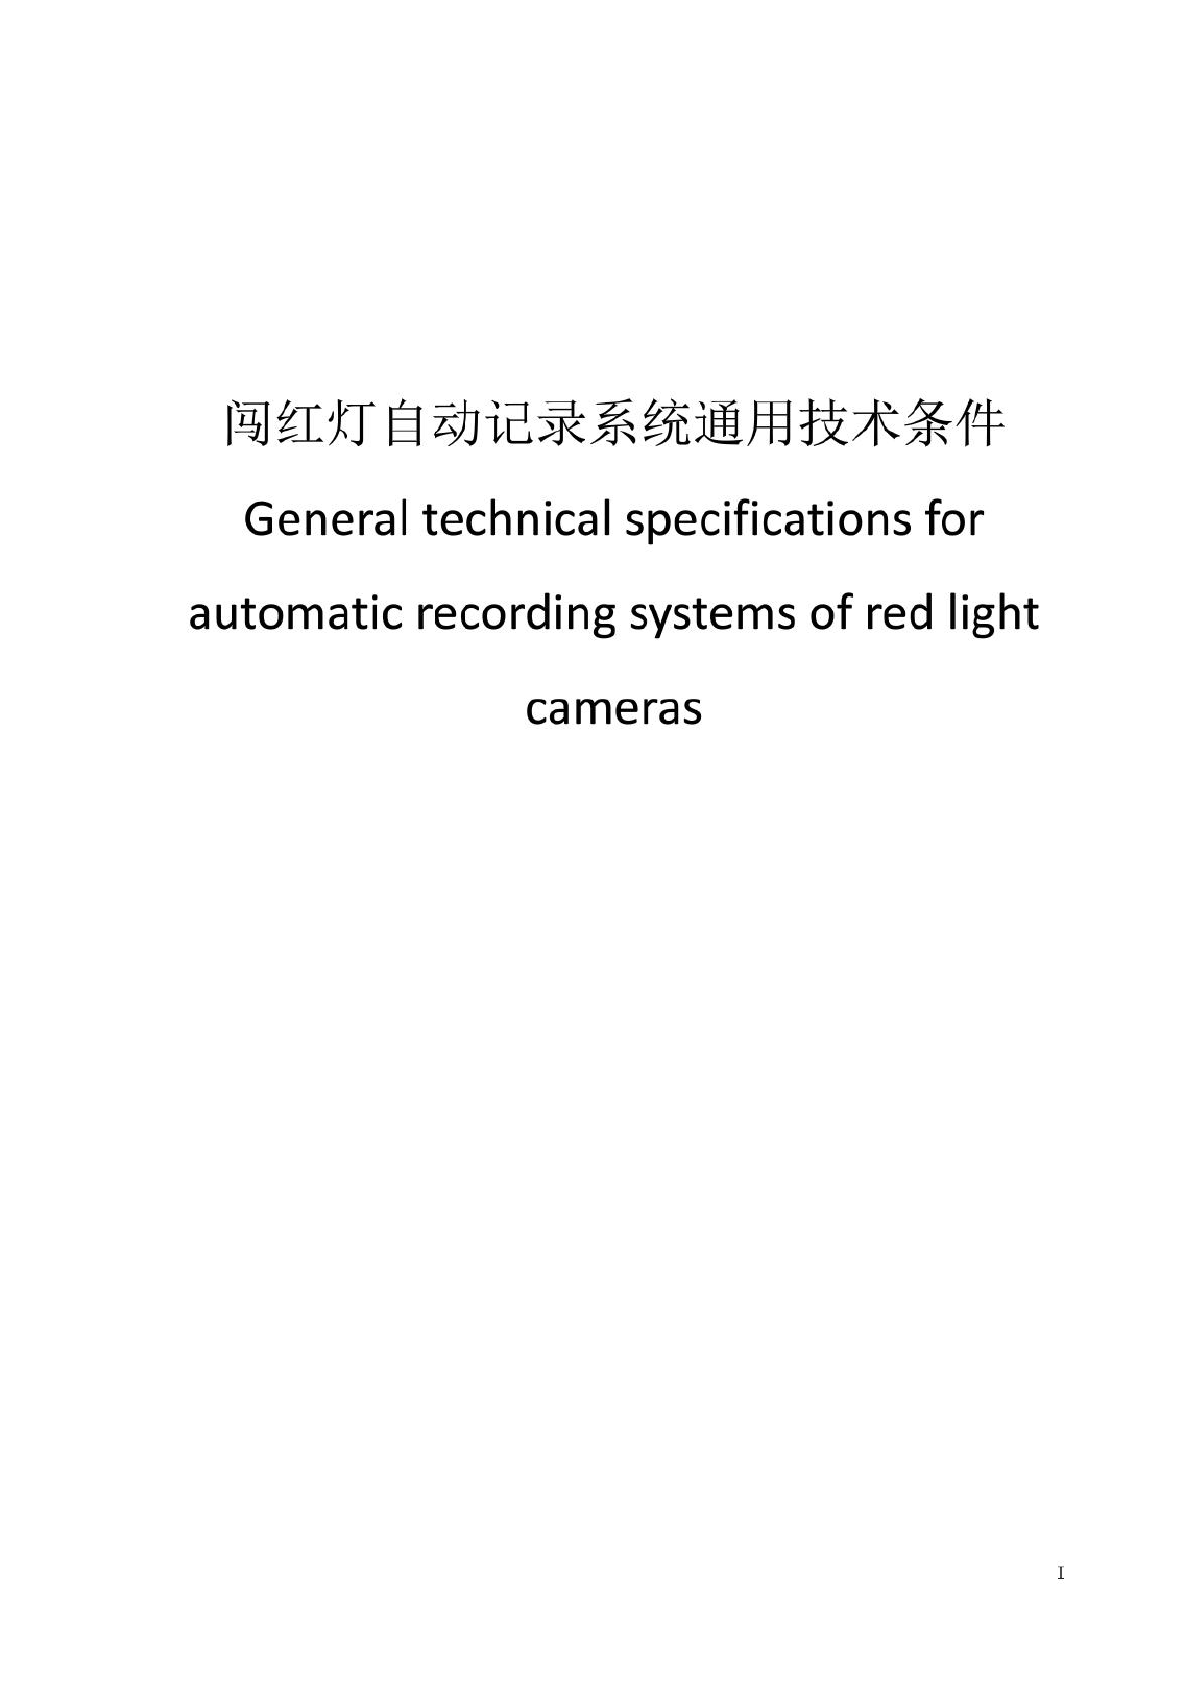 闯红灯自动记录系统通用技术条件-2014年最新